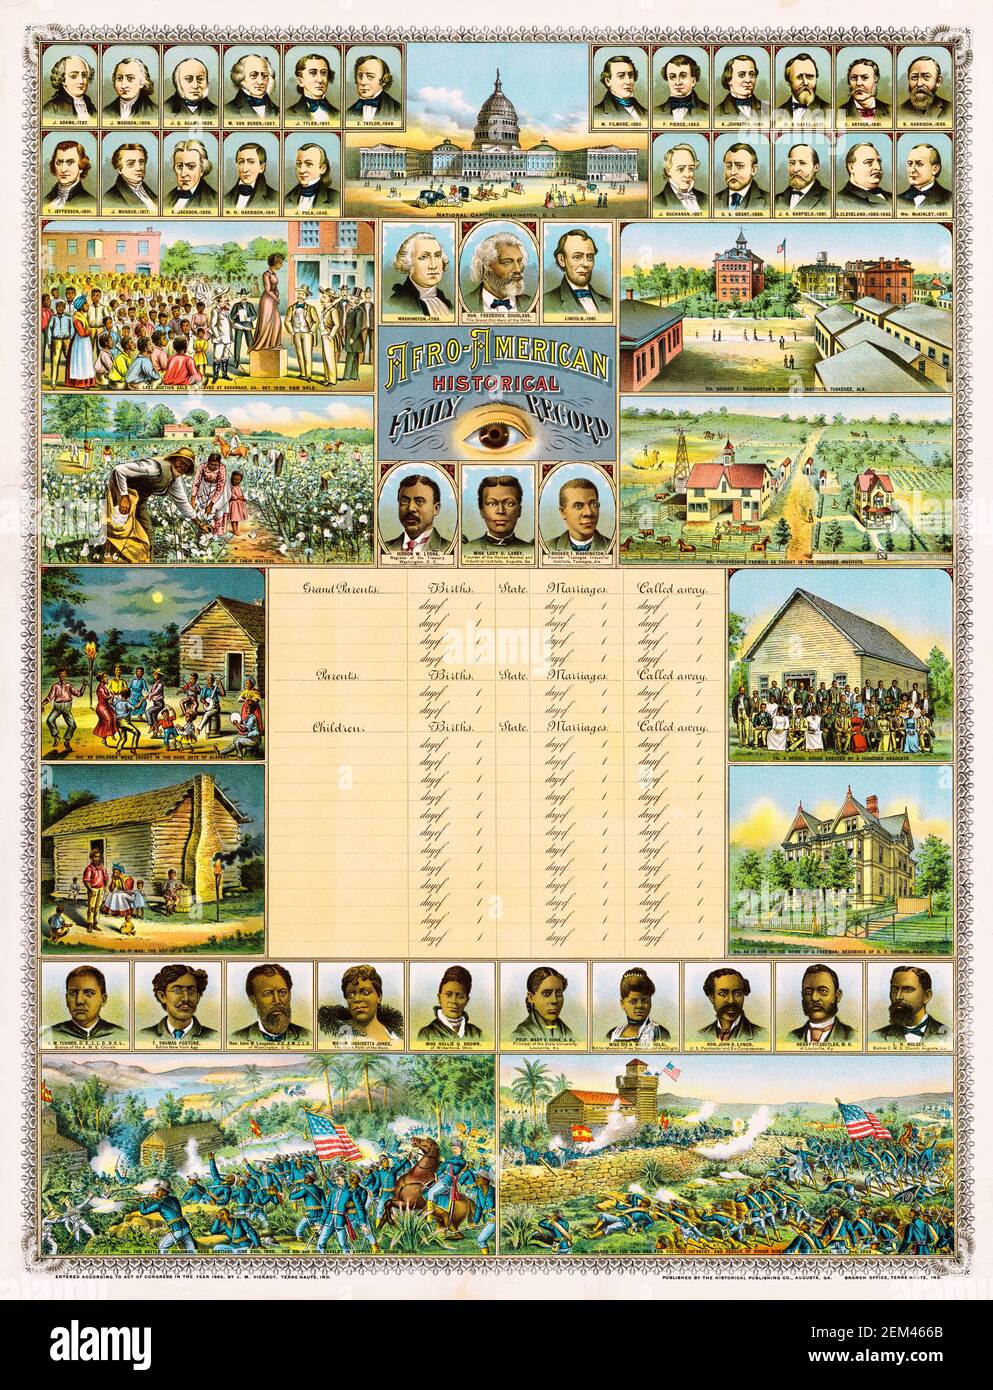 Afro-American, Historical Family Record, una carta genealogica personale e storia pittorica dell'avanzamento afroamericano negli Stati Uniti, stampa di James M Vickroy, circa 1899 Foto Stock